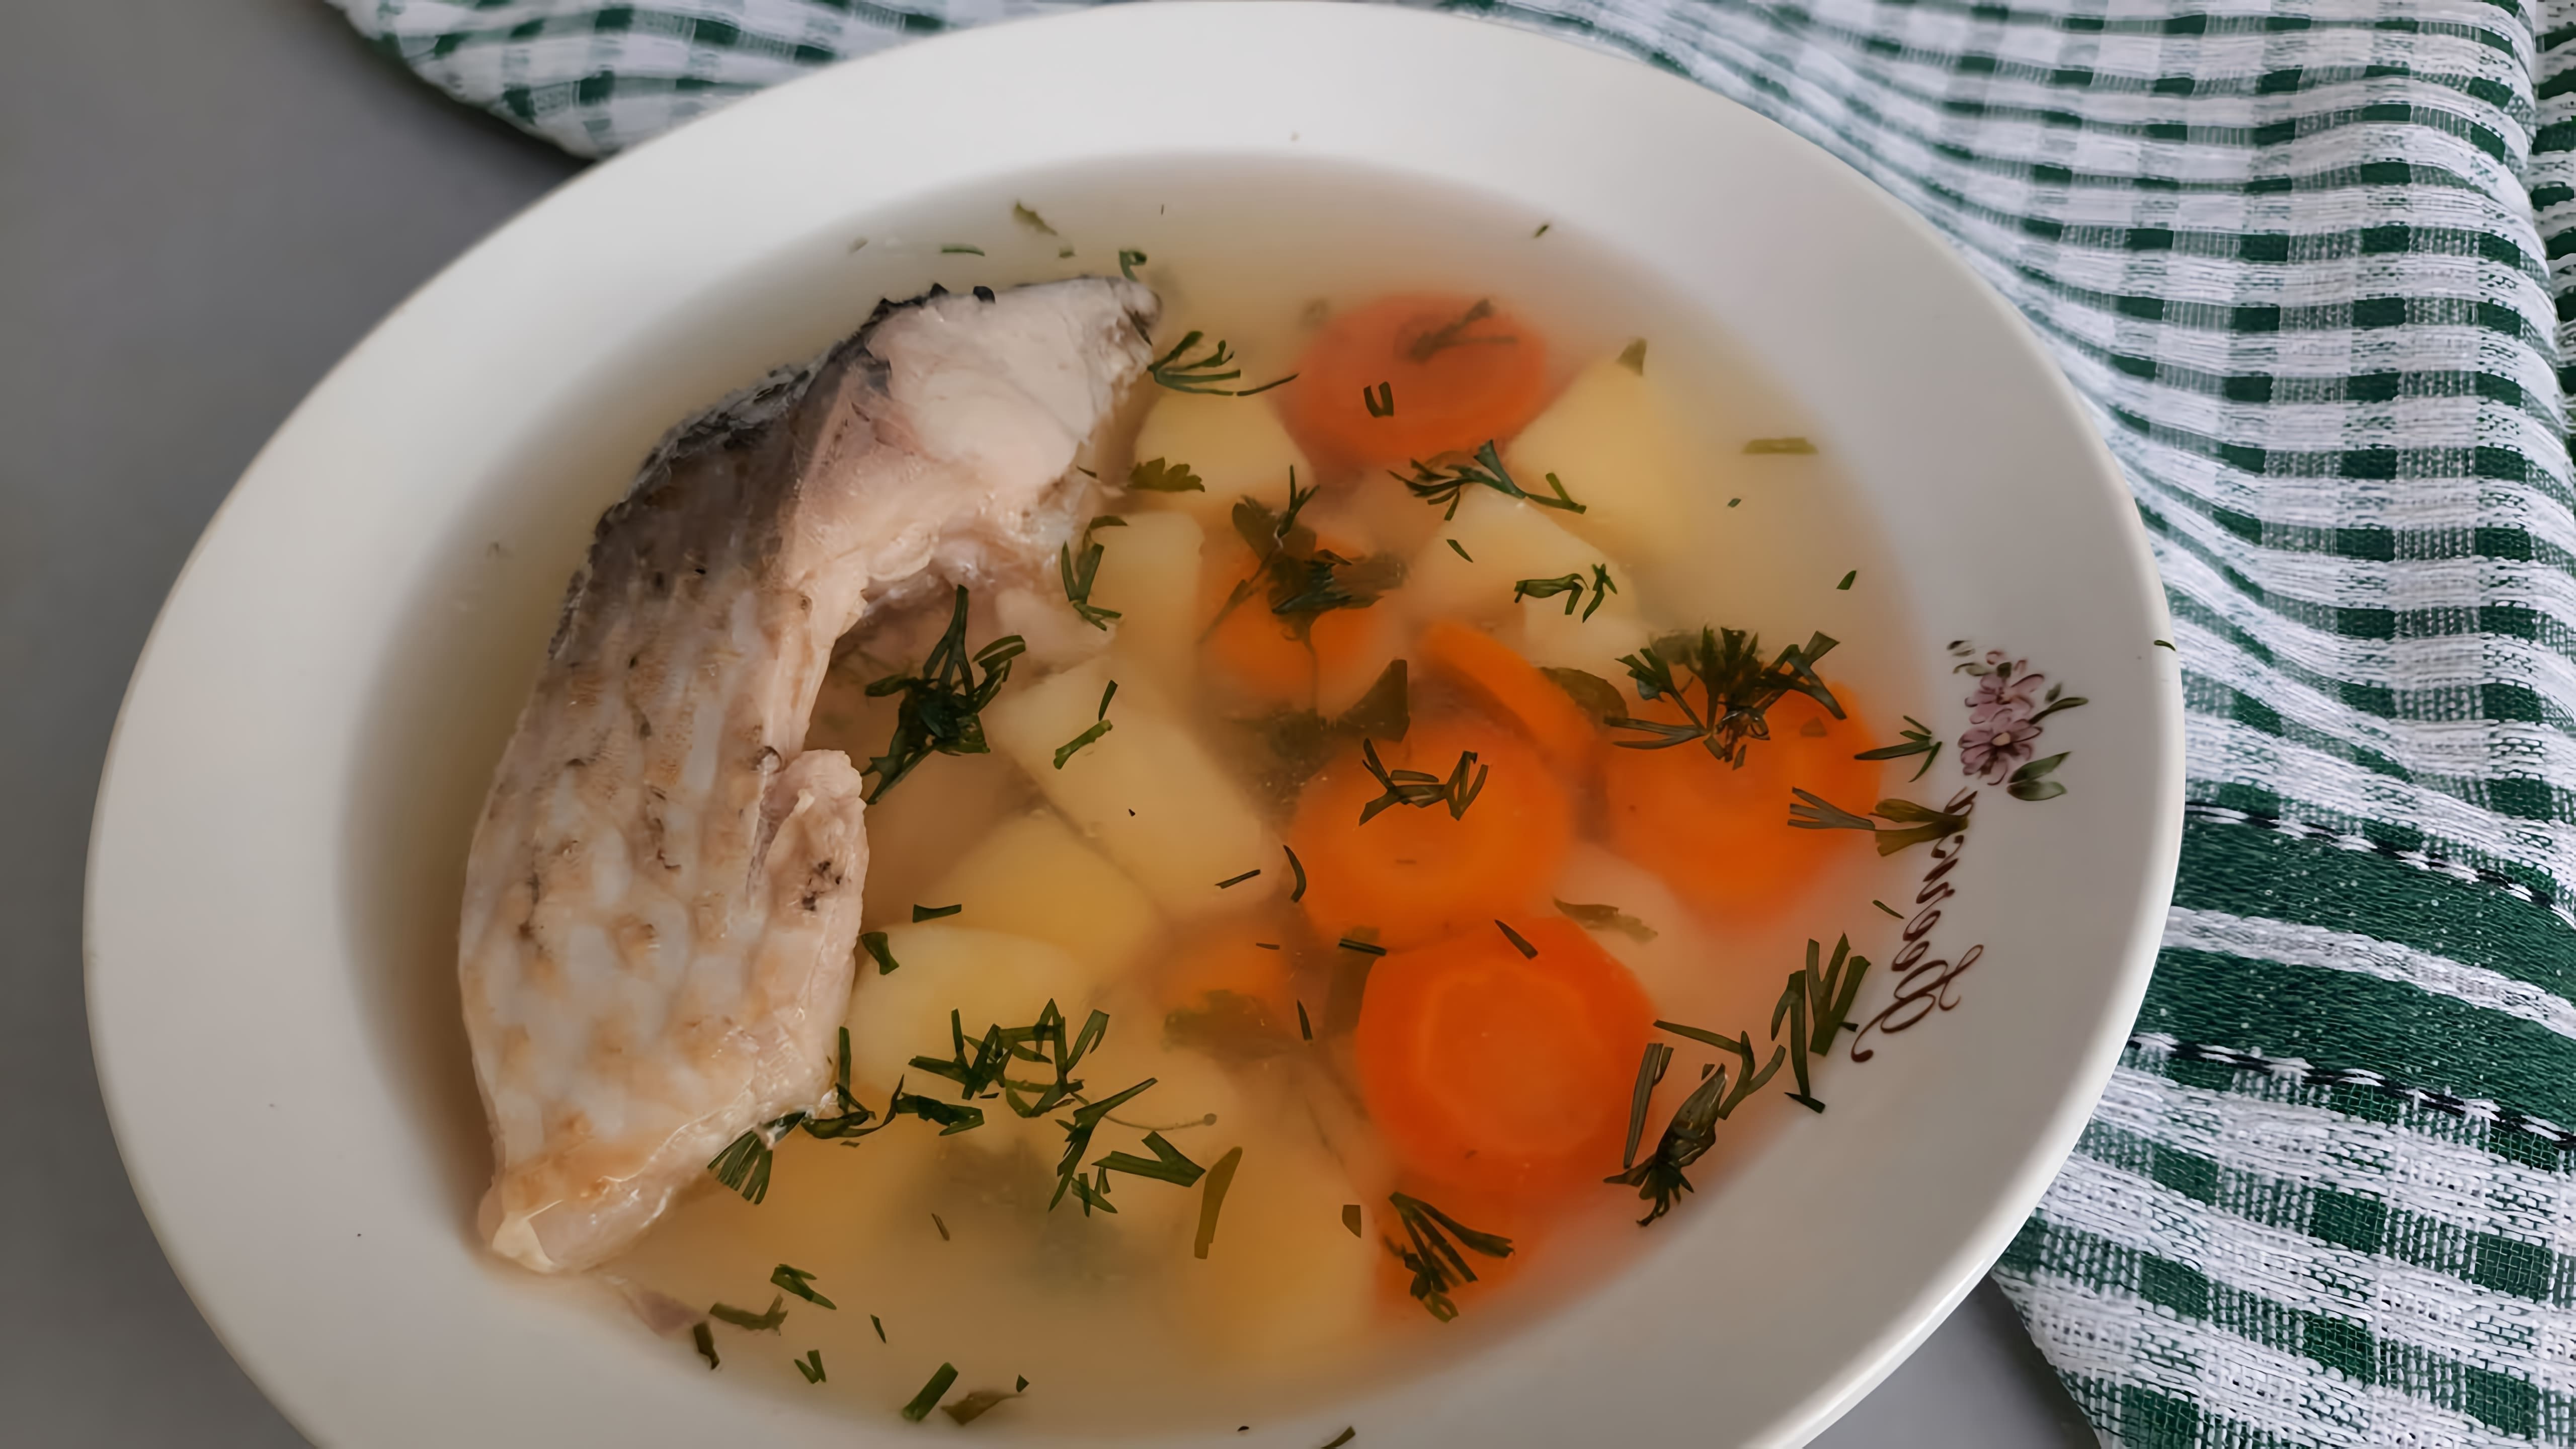 Уха домашняя – вкуснейший рыбный суп, которому мало что составит конкуренцию. Простой рецепт ухи из серии вкусно и... 